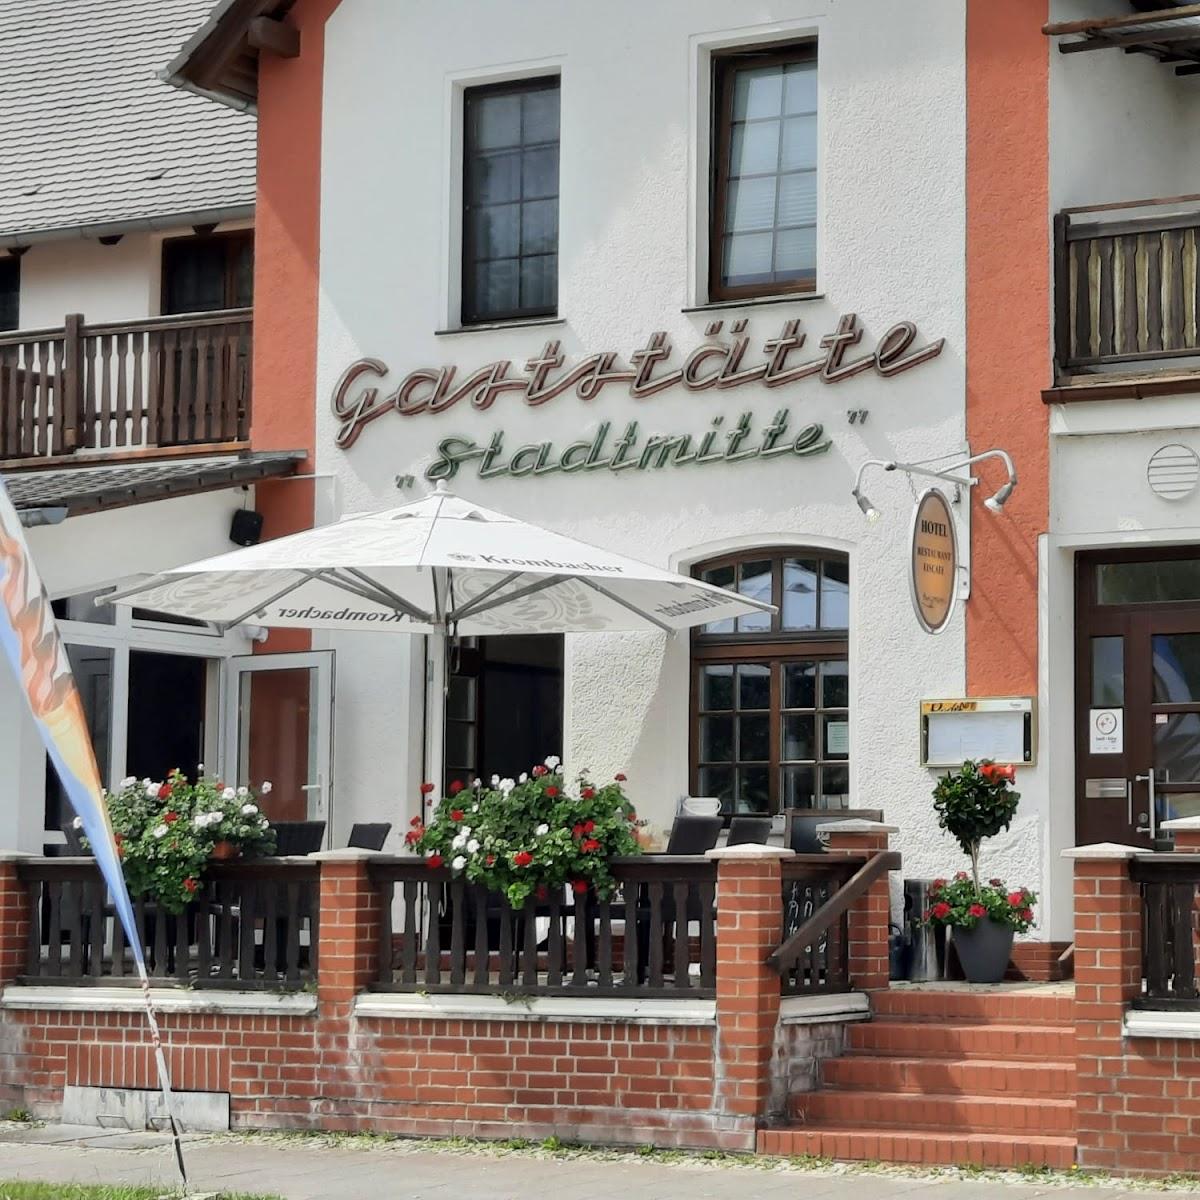 Restaurant "Hotel - Restaurant - Eiscafe  Stadtmitte " in Brück